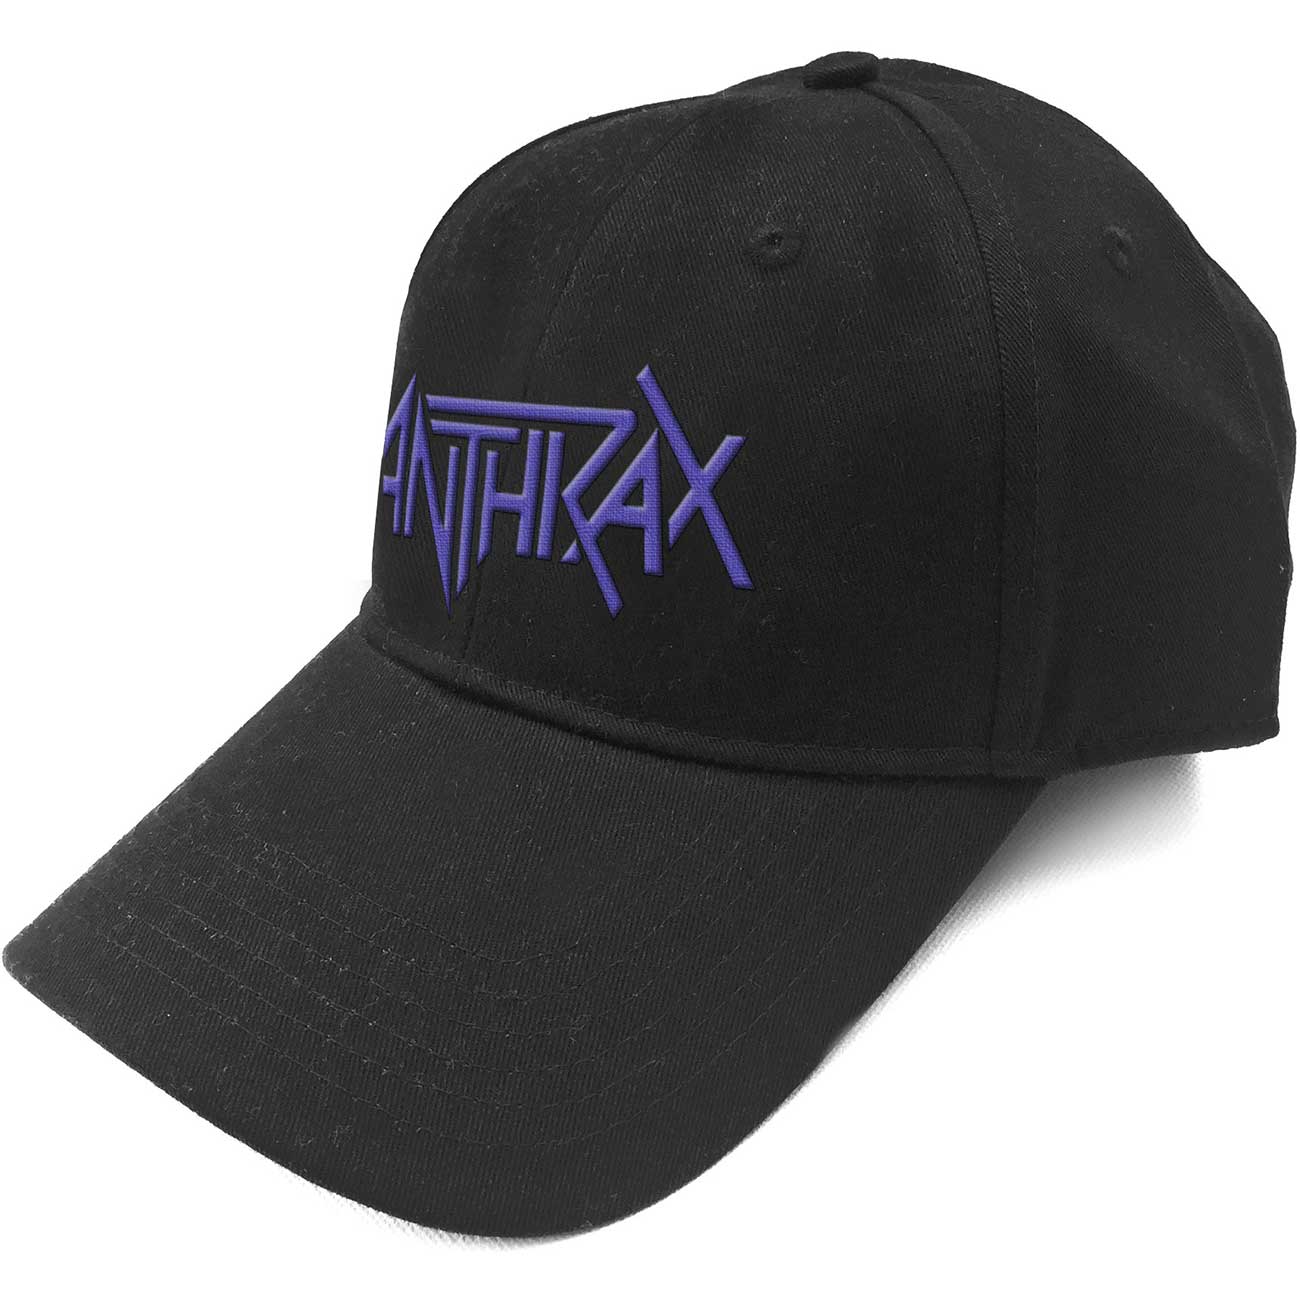 ANTHRAX logo